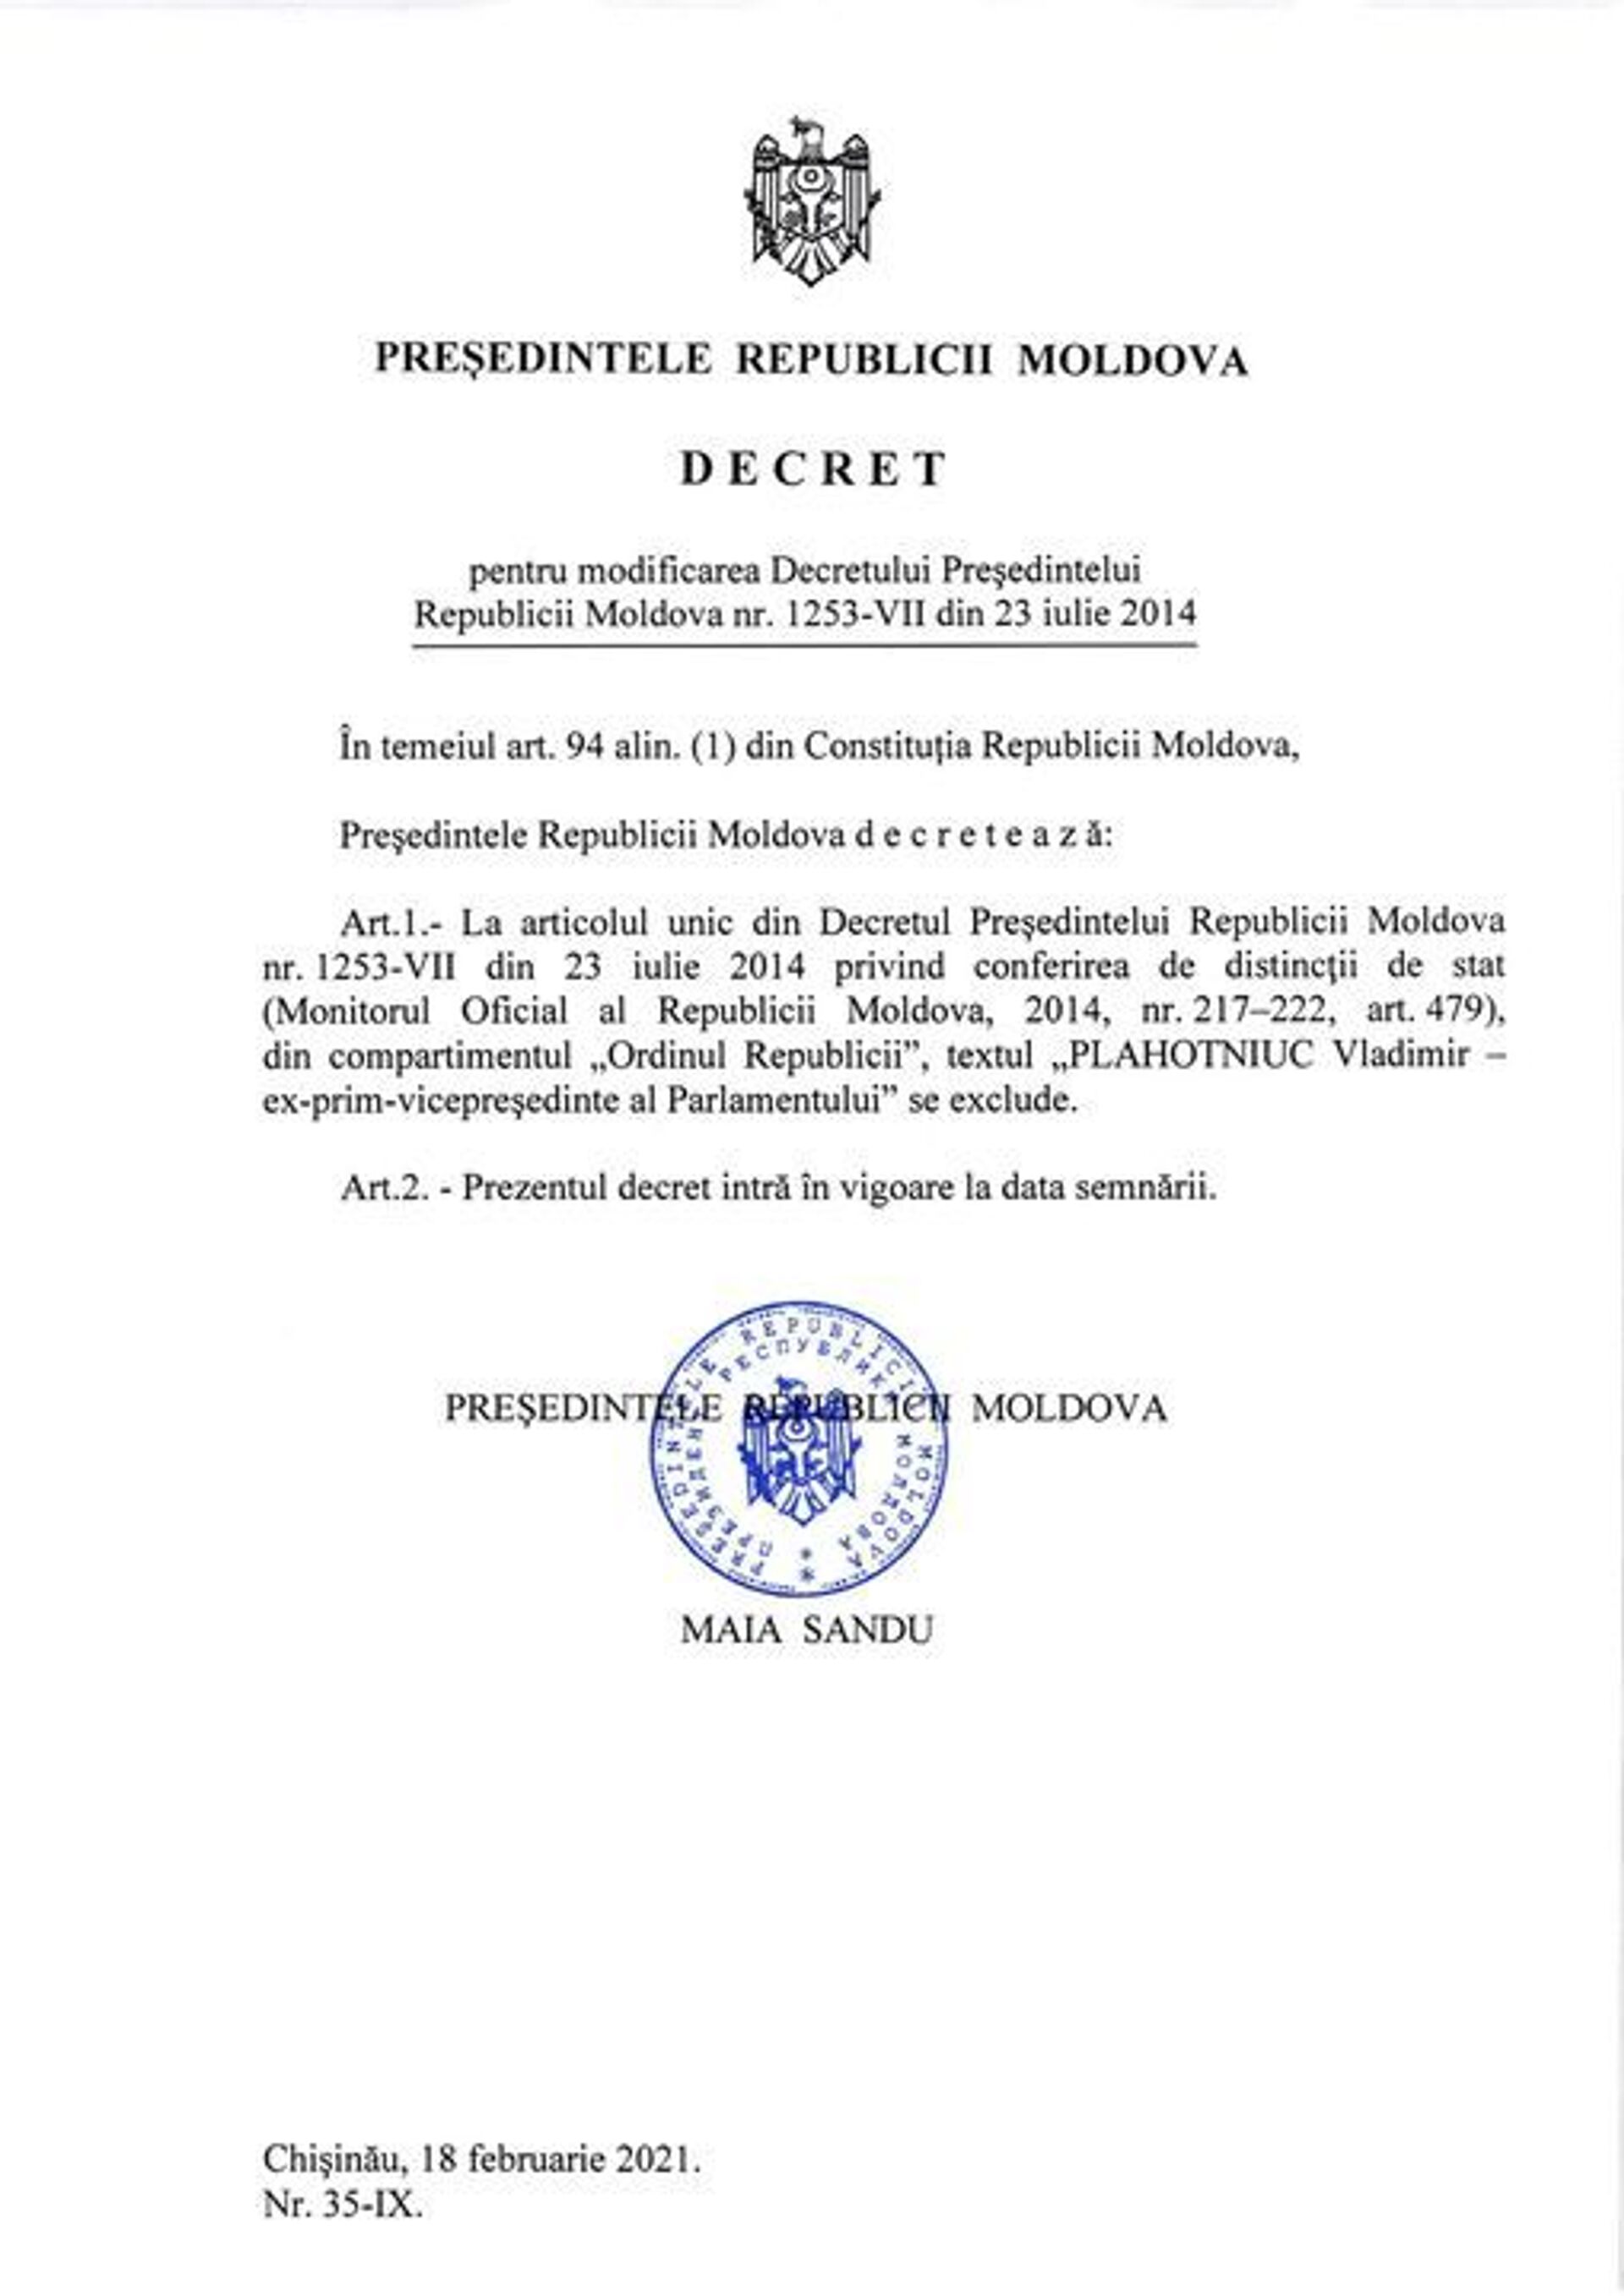 Плахотнюка лишили наивысшей награды в Молдове – Ордена республики - Sputnik Молдова, 1920, 18.02.2021